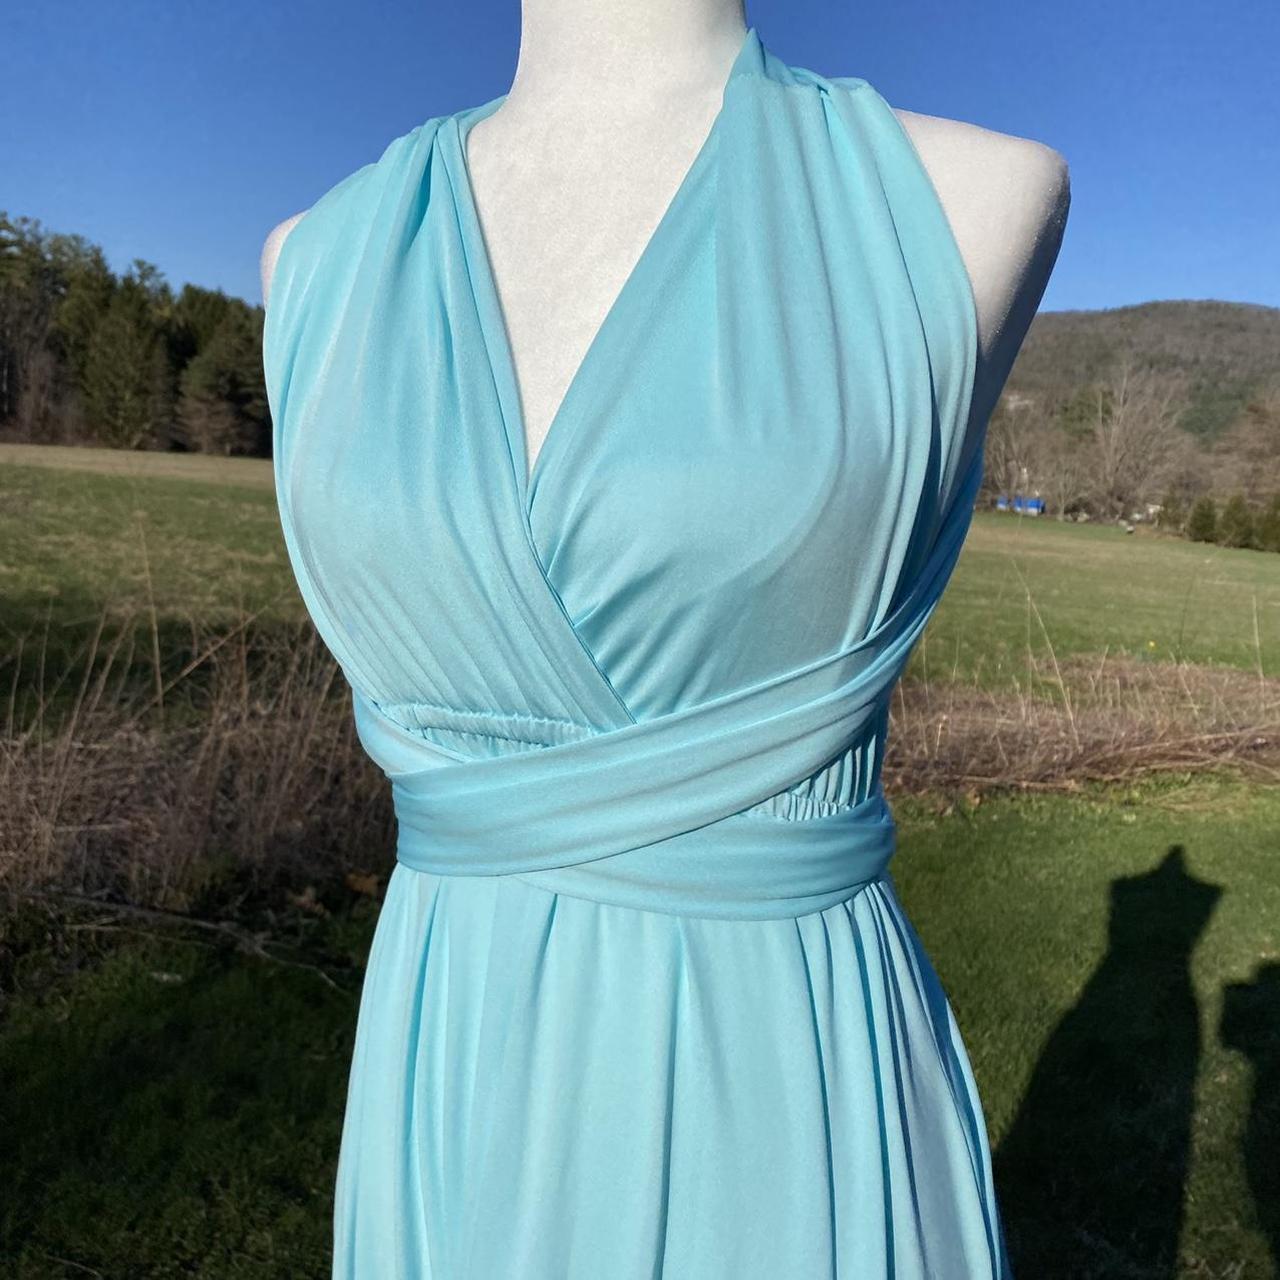 90s Aquamarine Wrap Dress 👗🧜🏼‍♀️🌊🐬🏝 Light blue wrap... - Depop